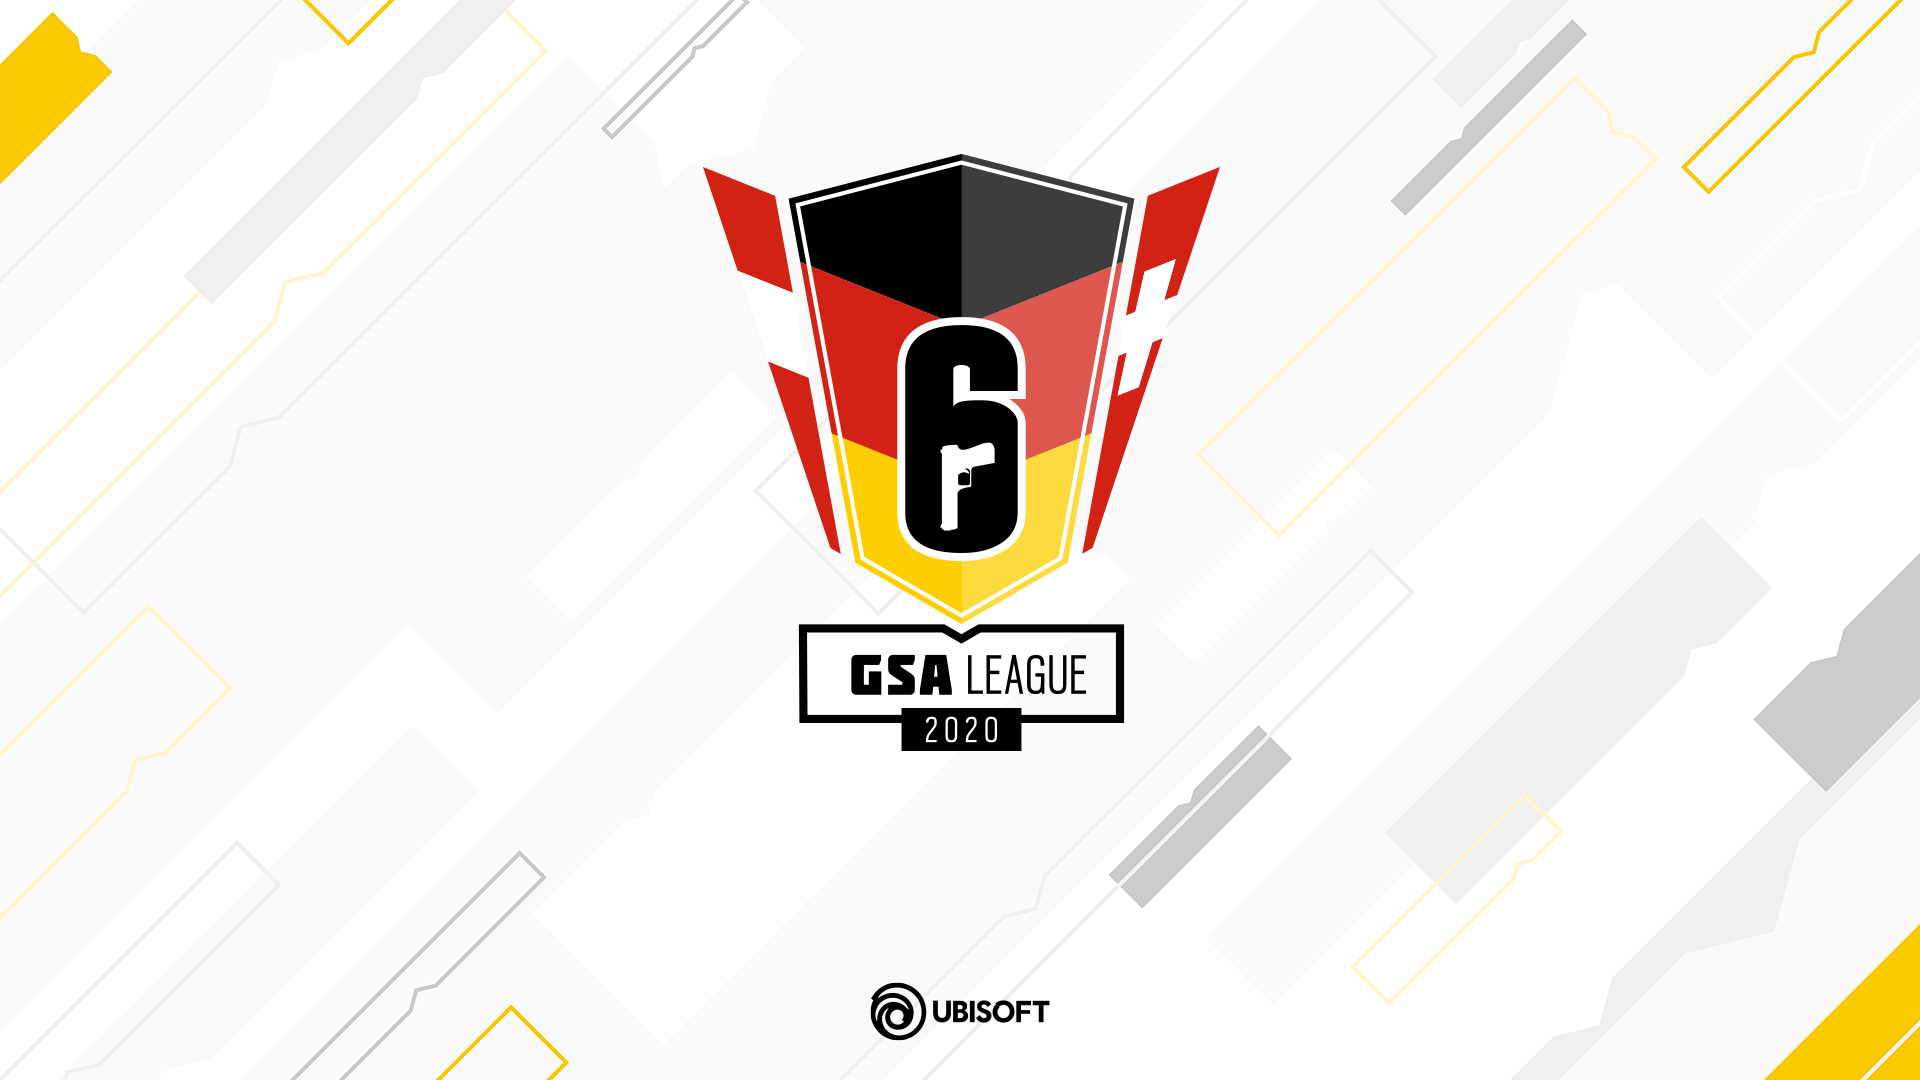 GSA League 2020